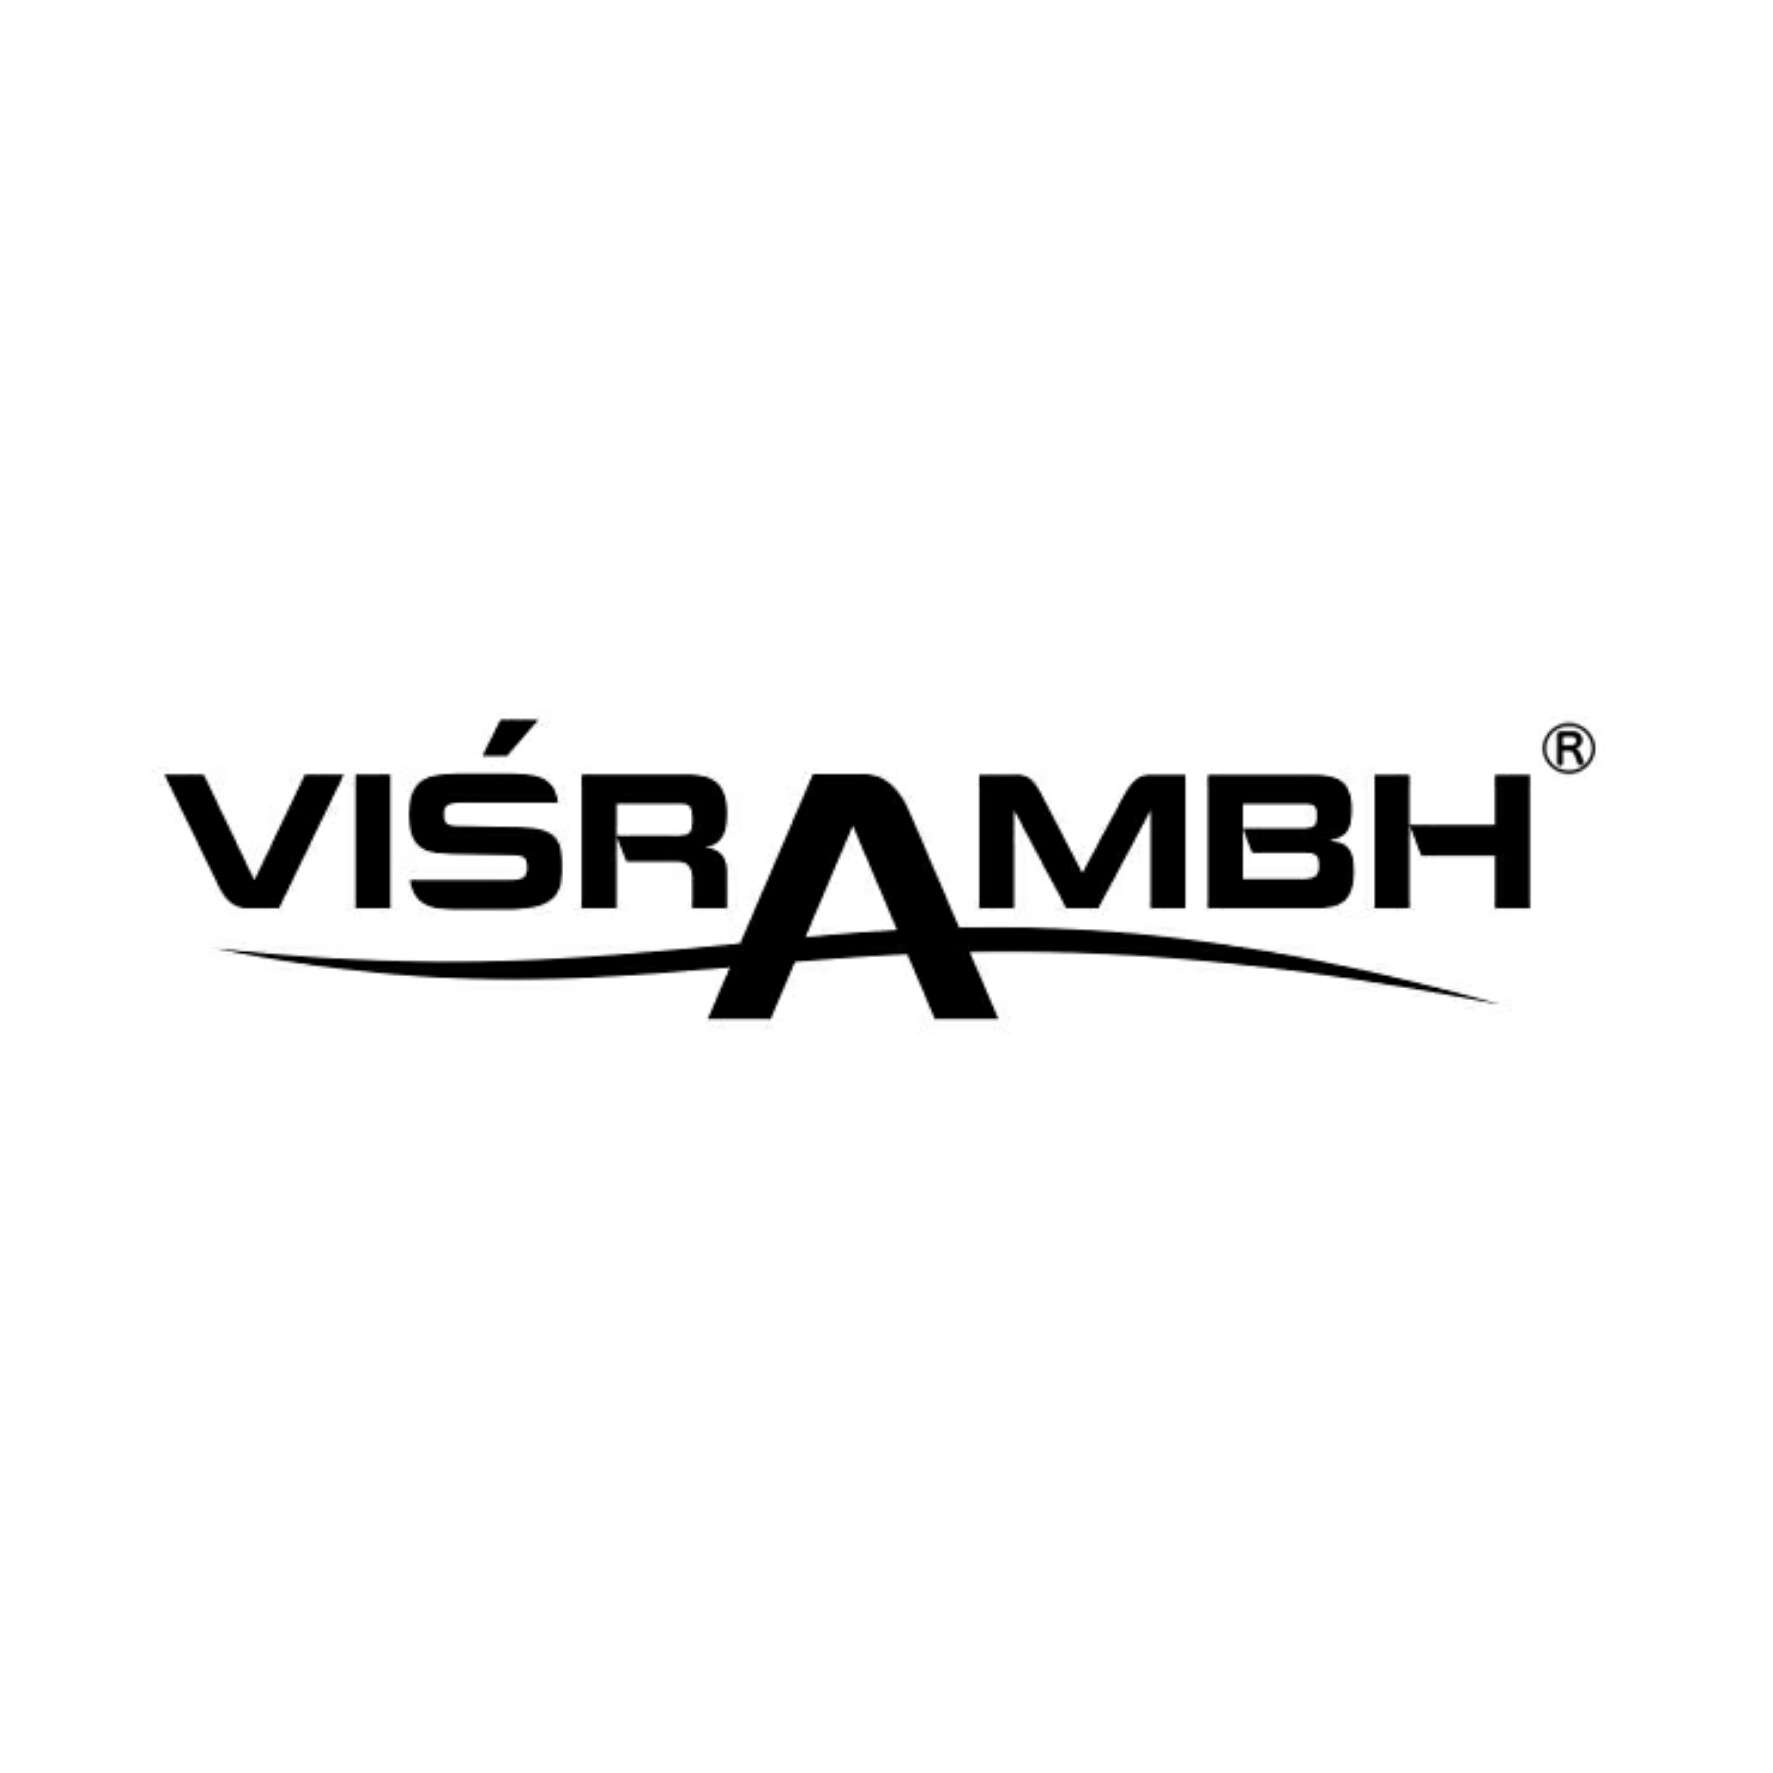 Visrambh